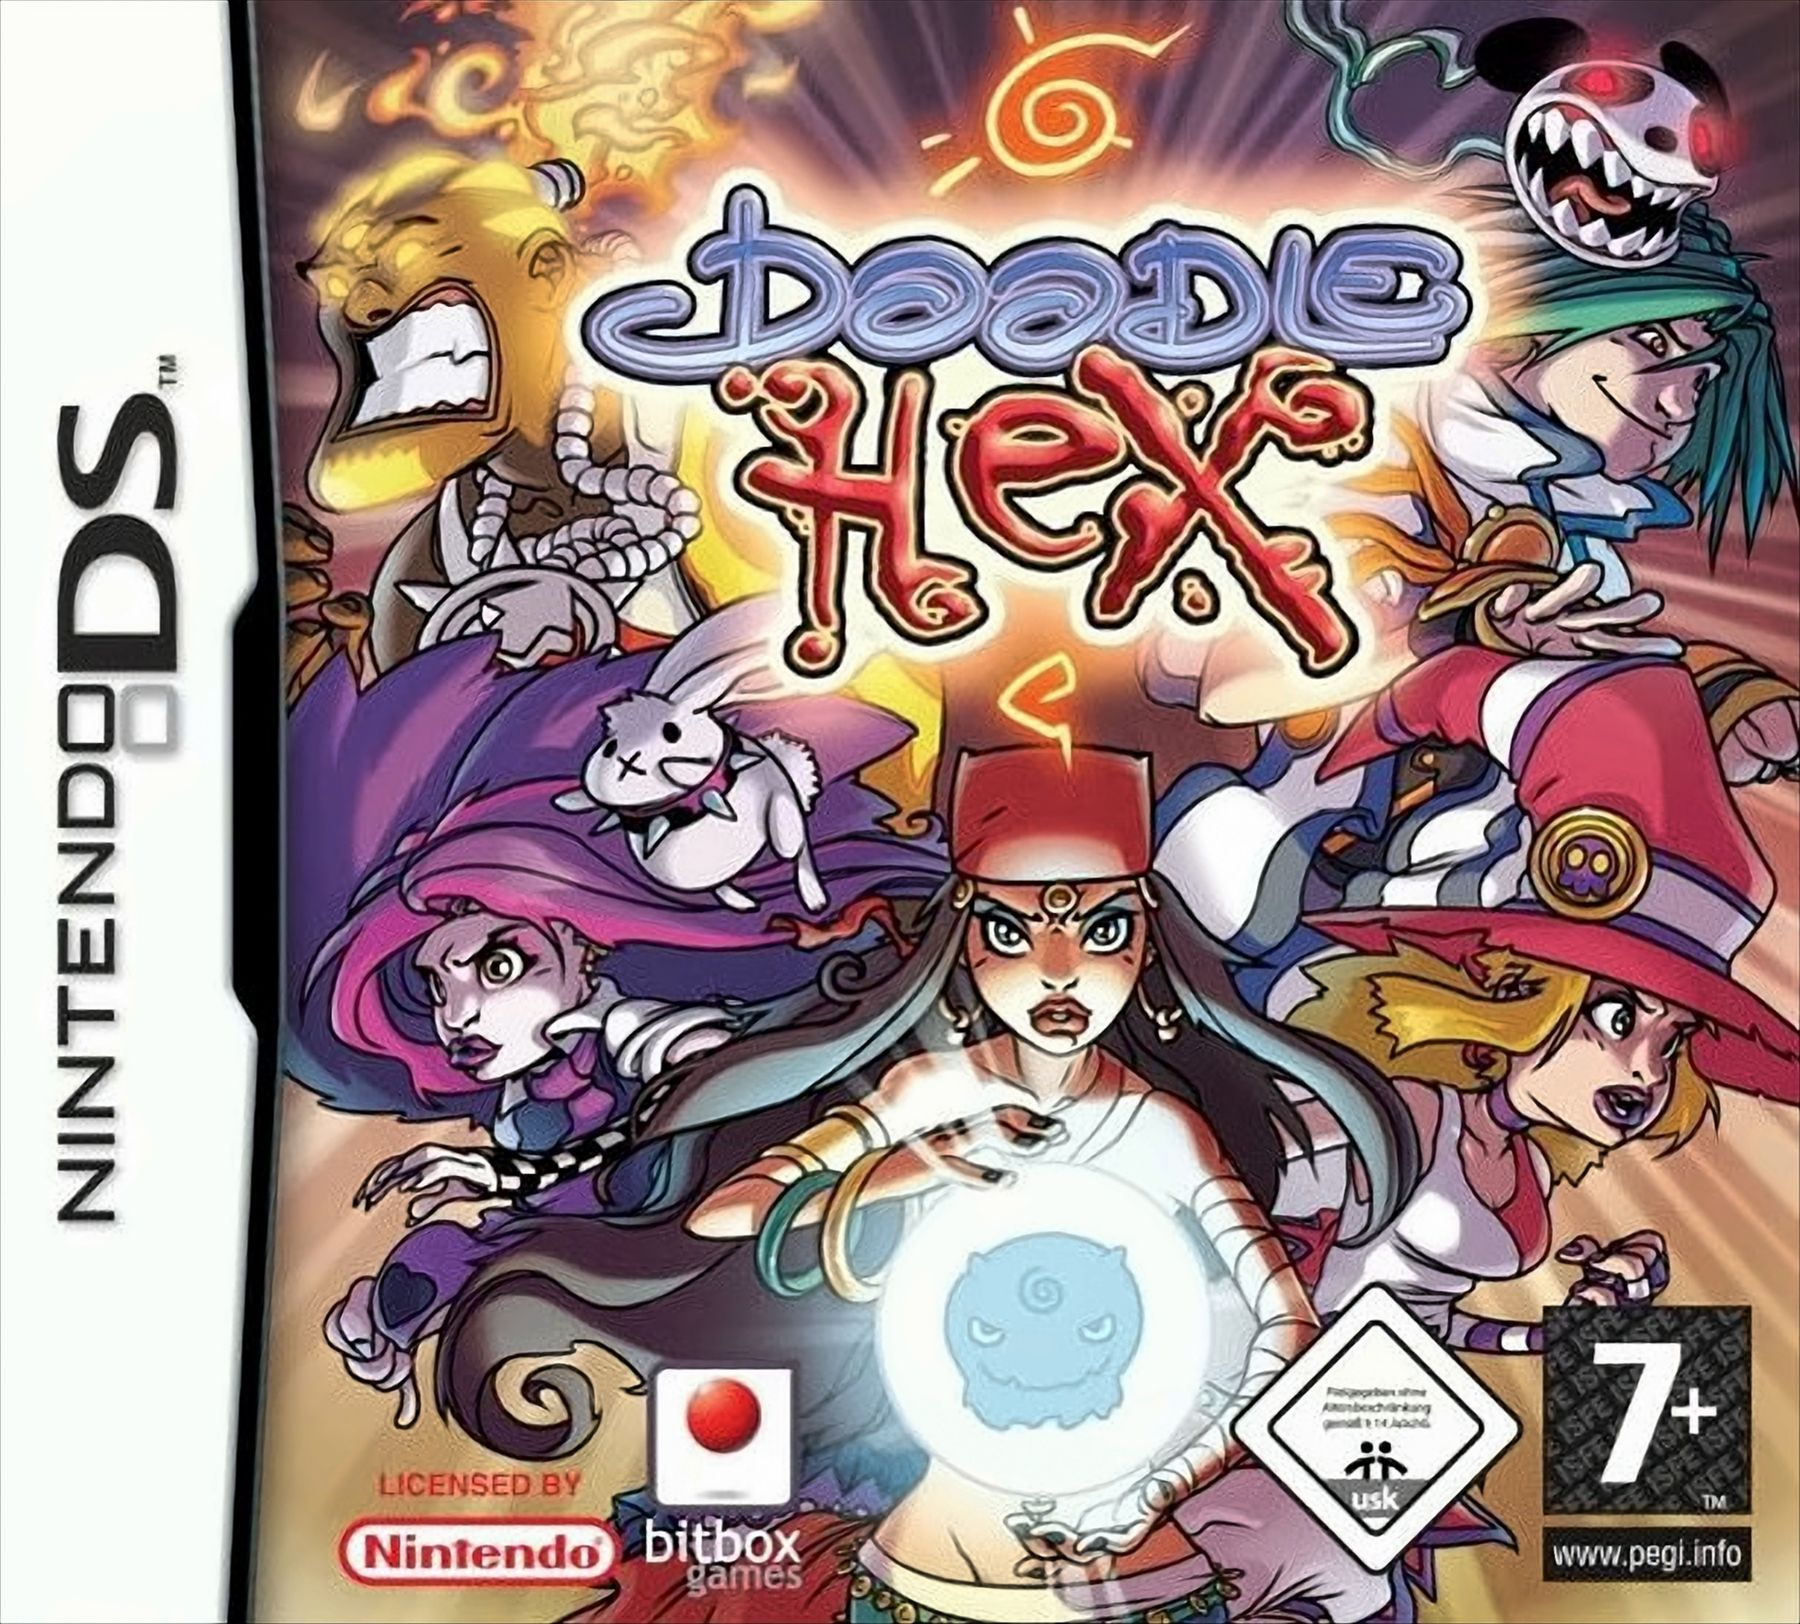 Doodle Hex DS] - [Nintendo